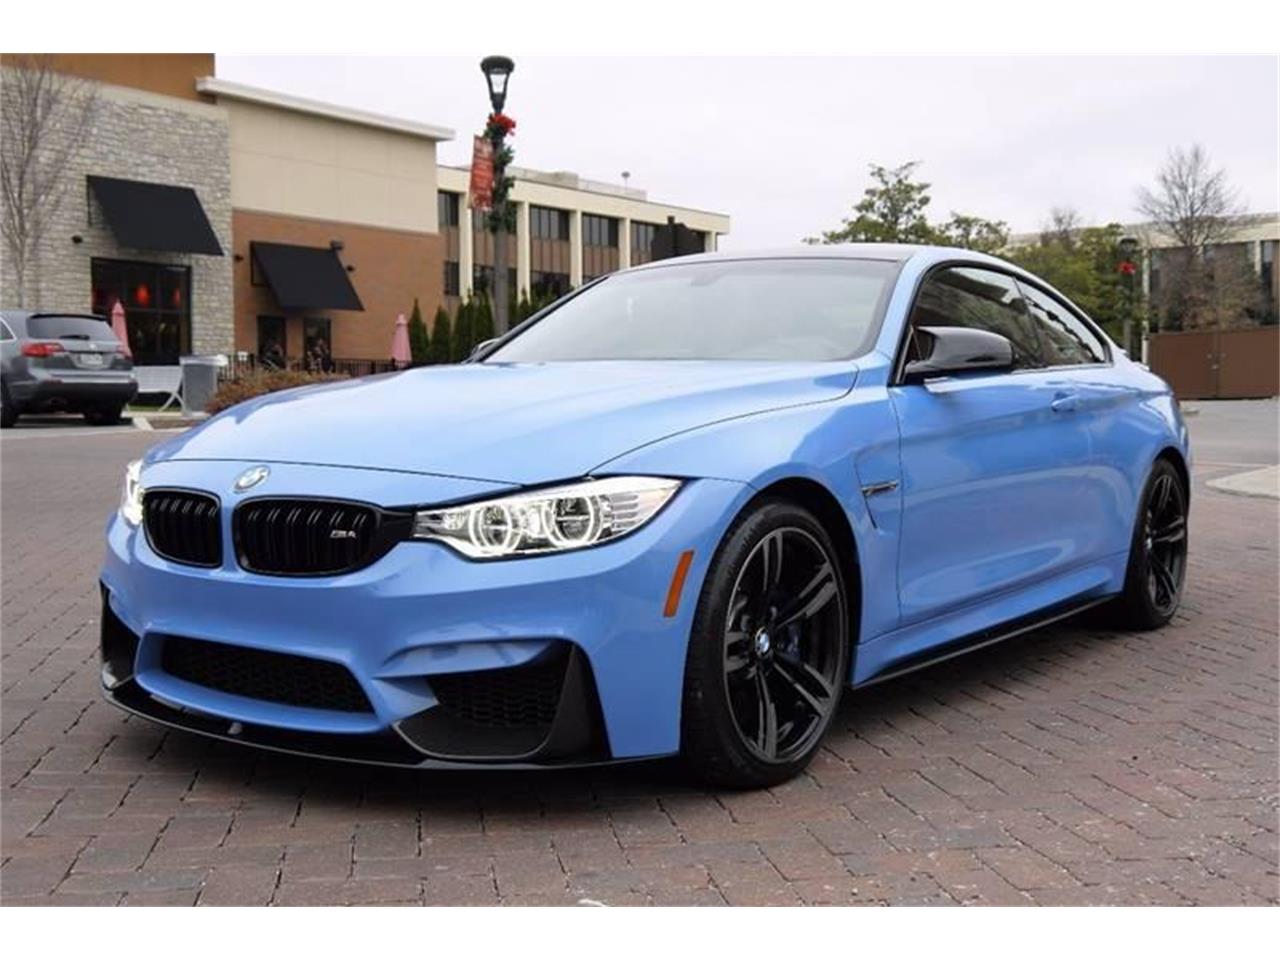 2016 BMW M4 for Sale | ClassicCars.com | CC-1070905